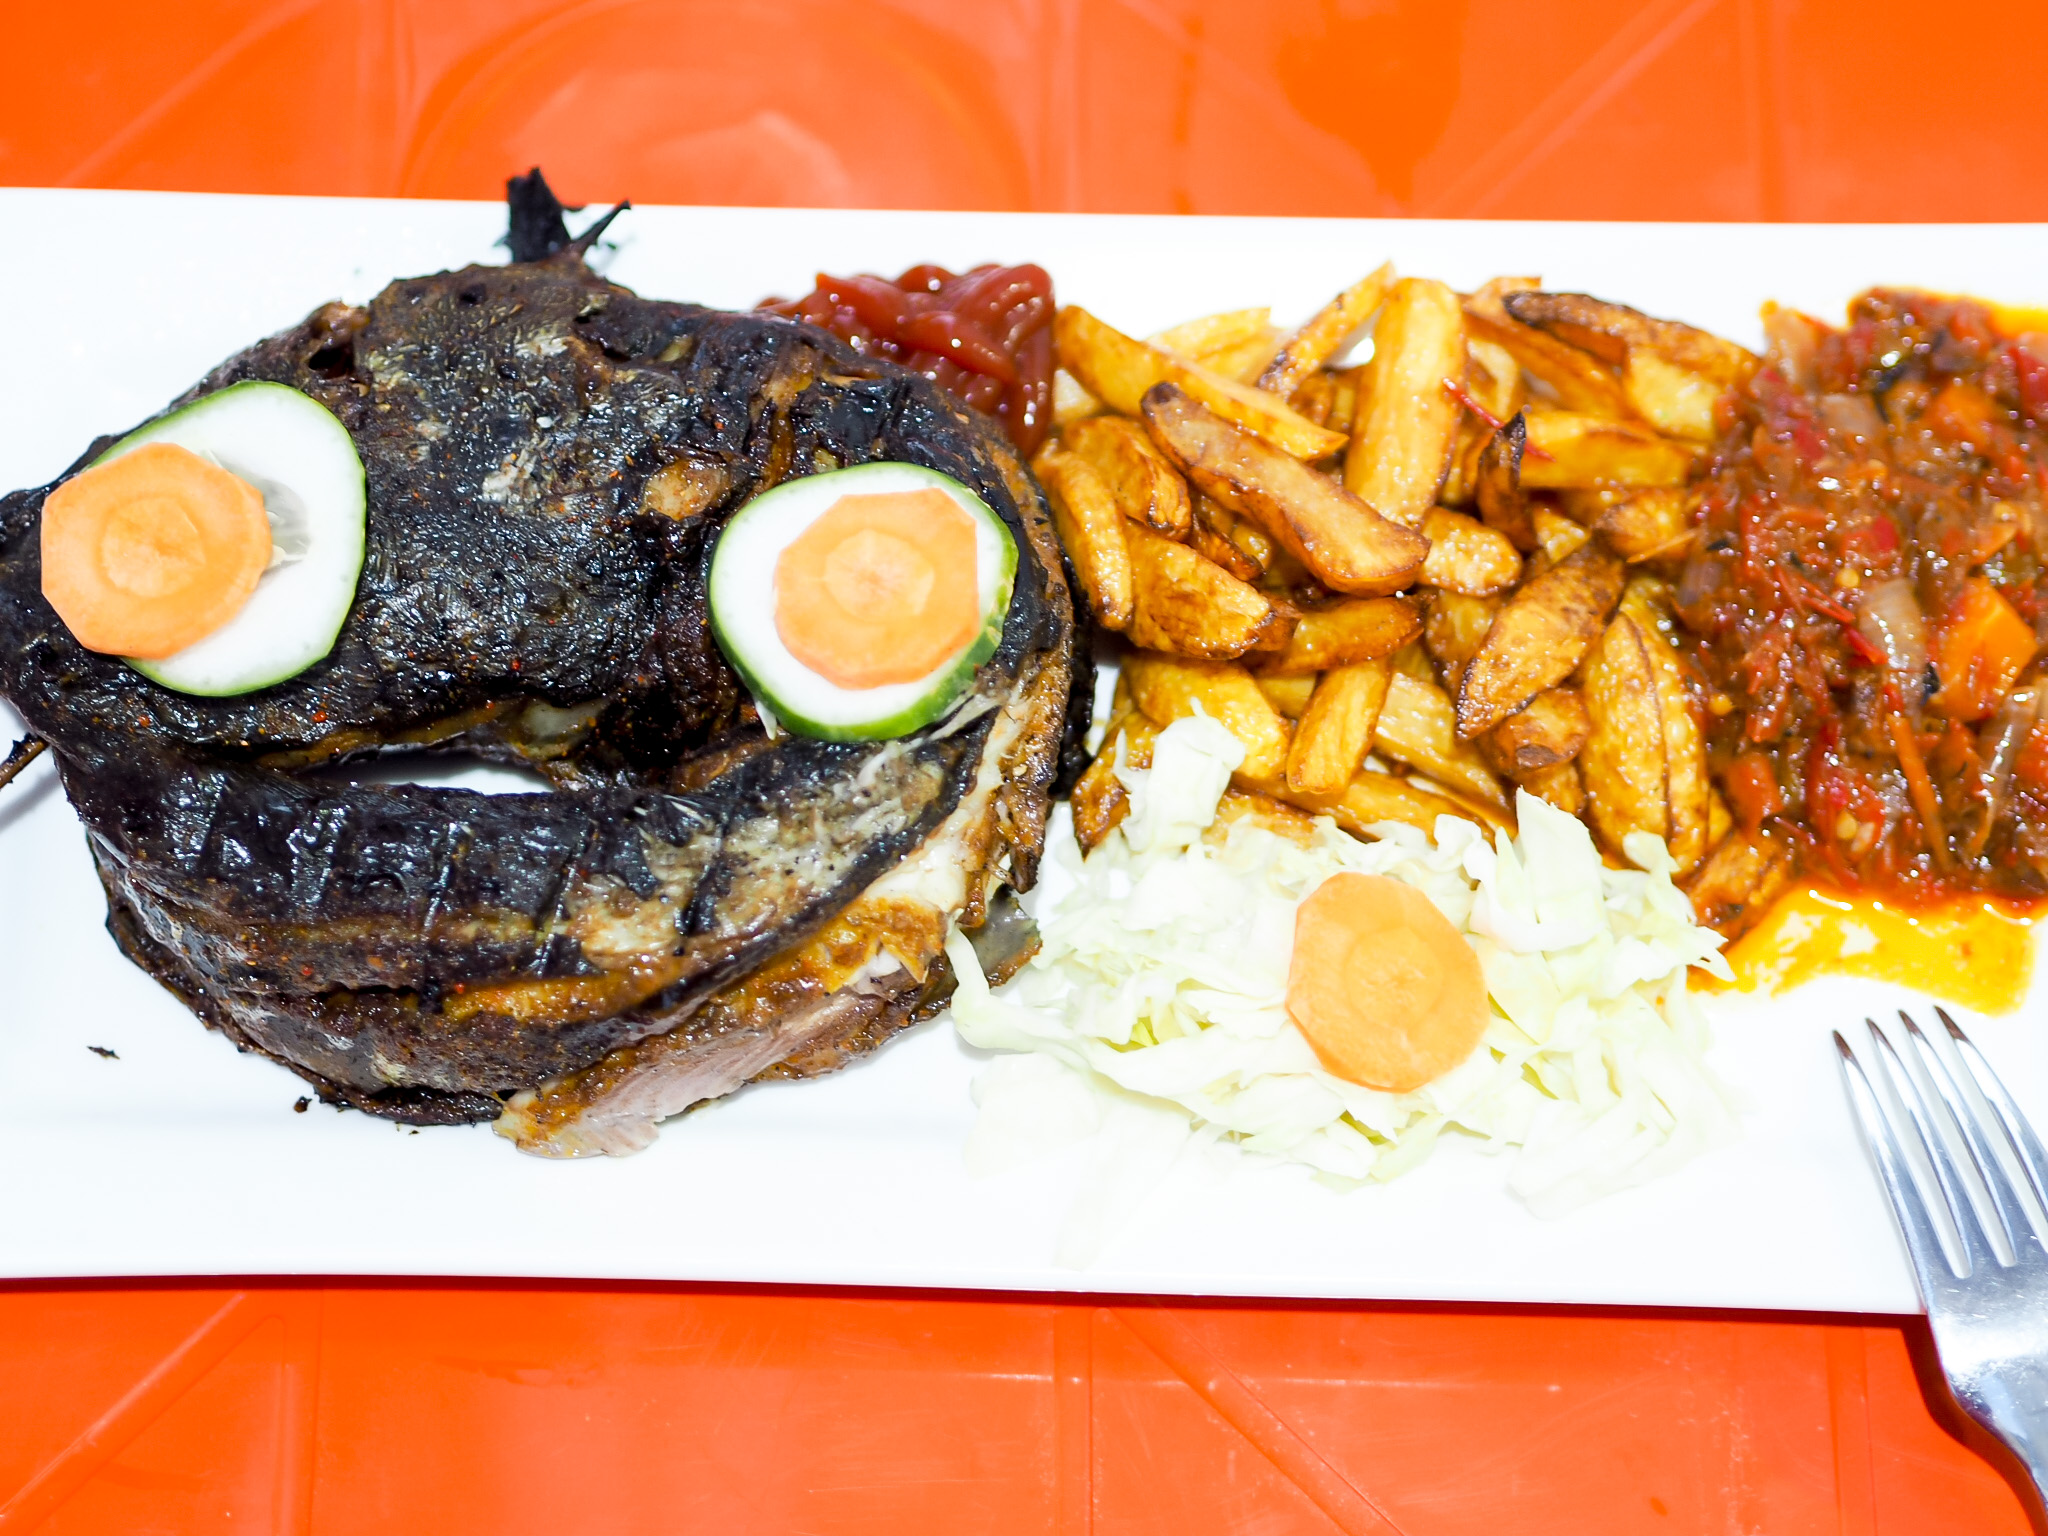 Ringroll Catfish menu at the Grill Abuja 